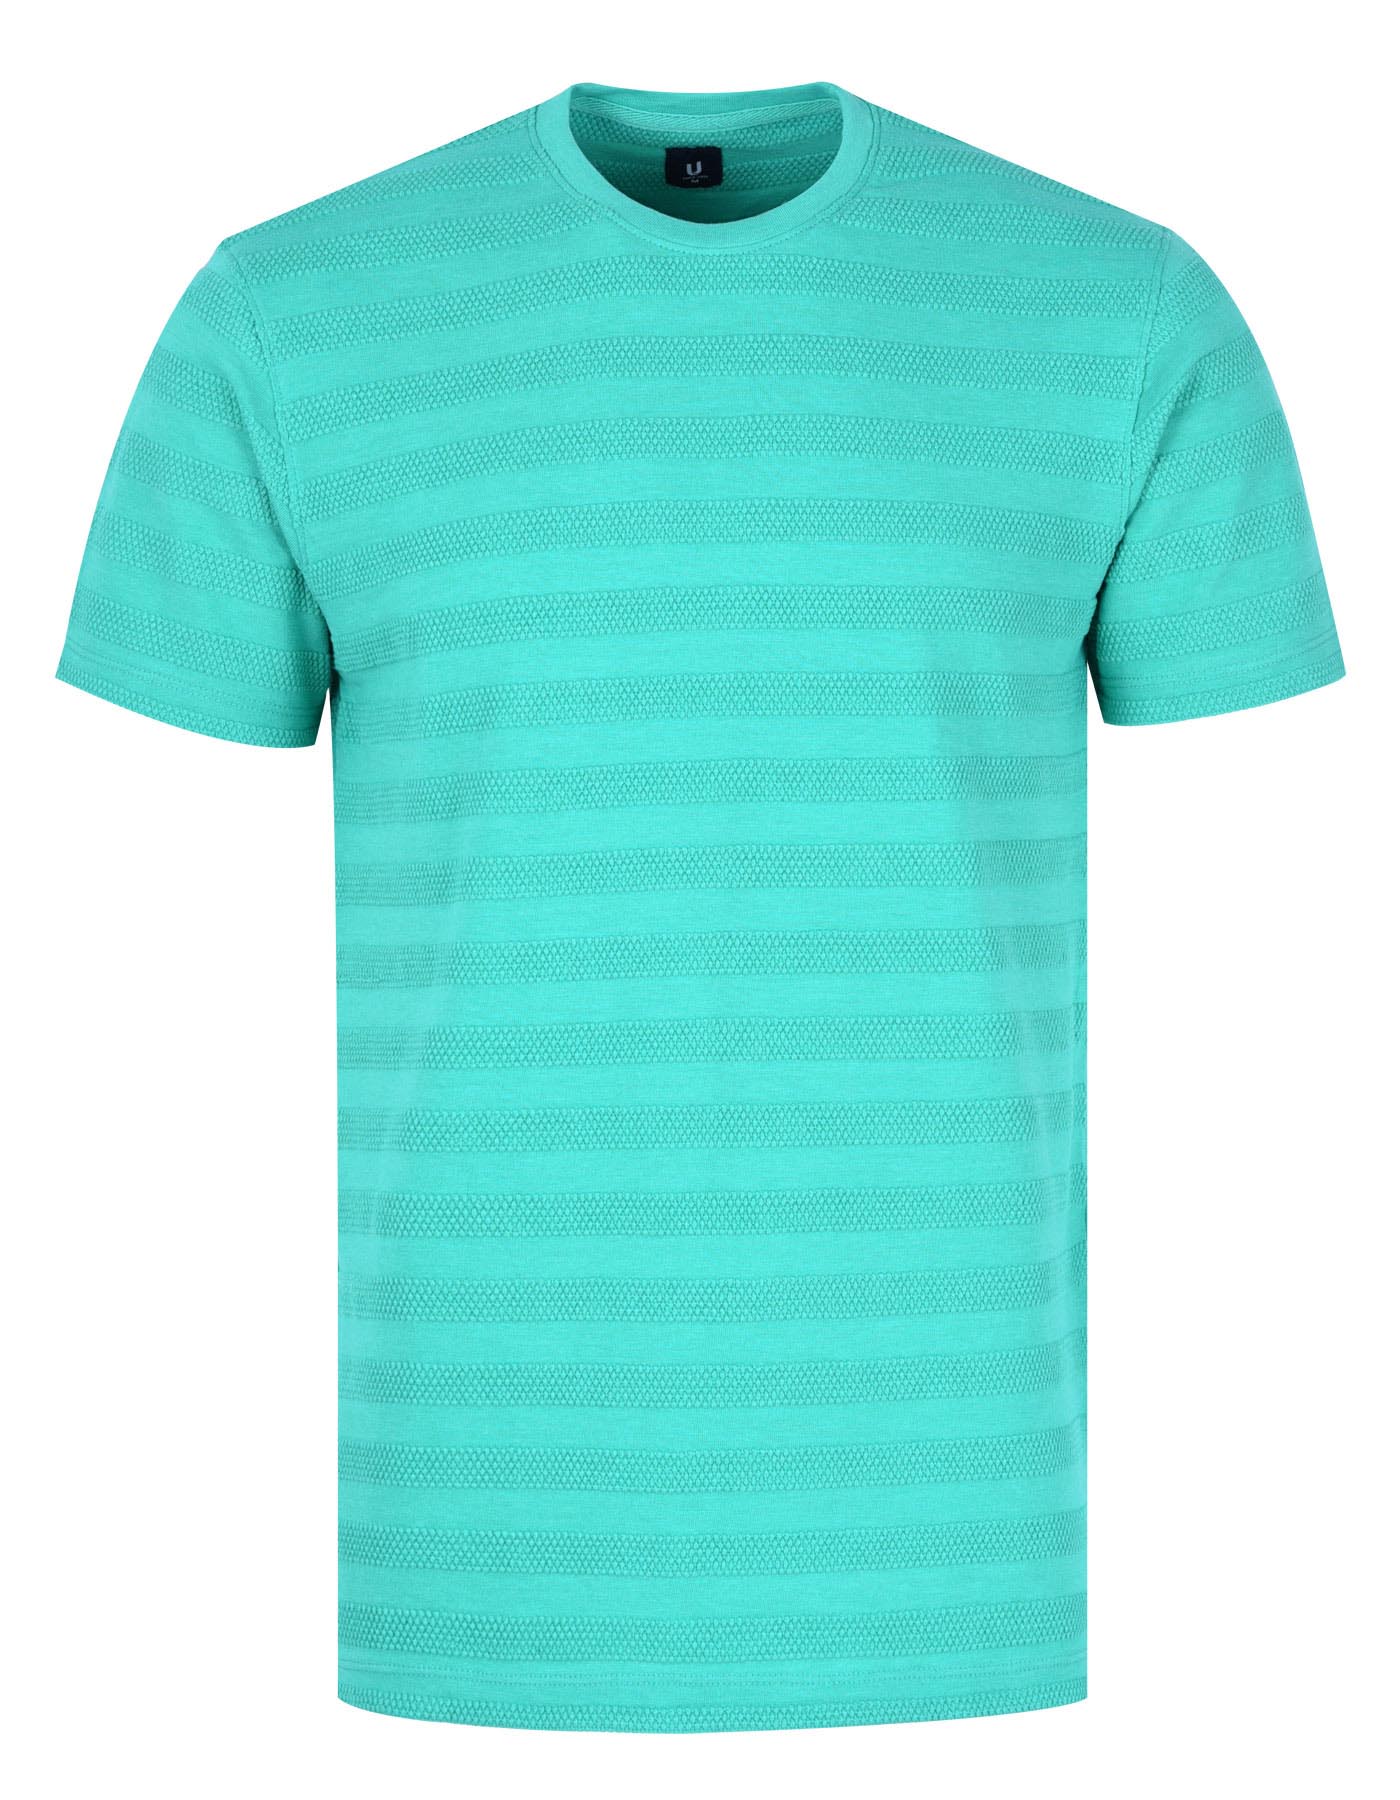 Men's Sea Green T shirt